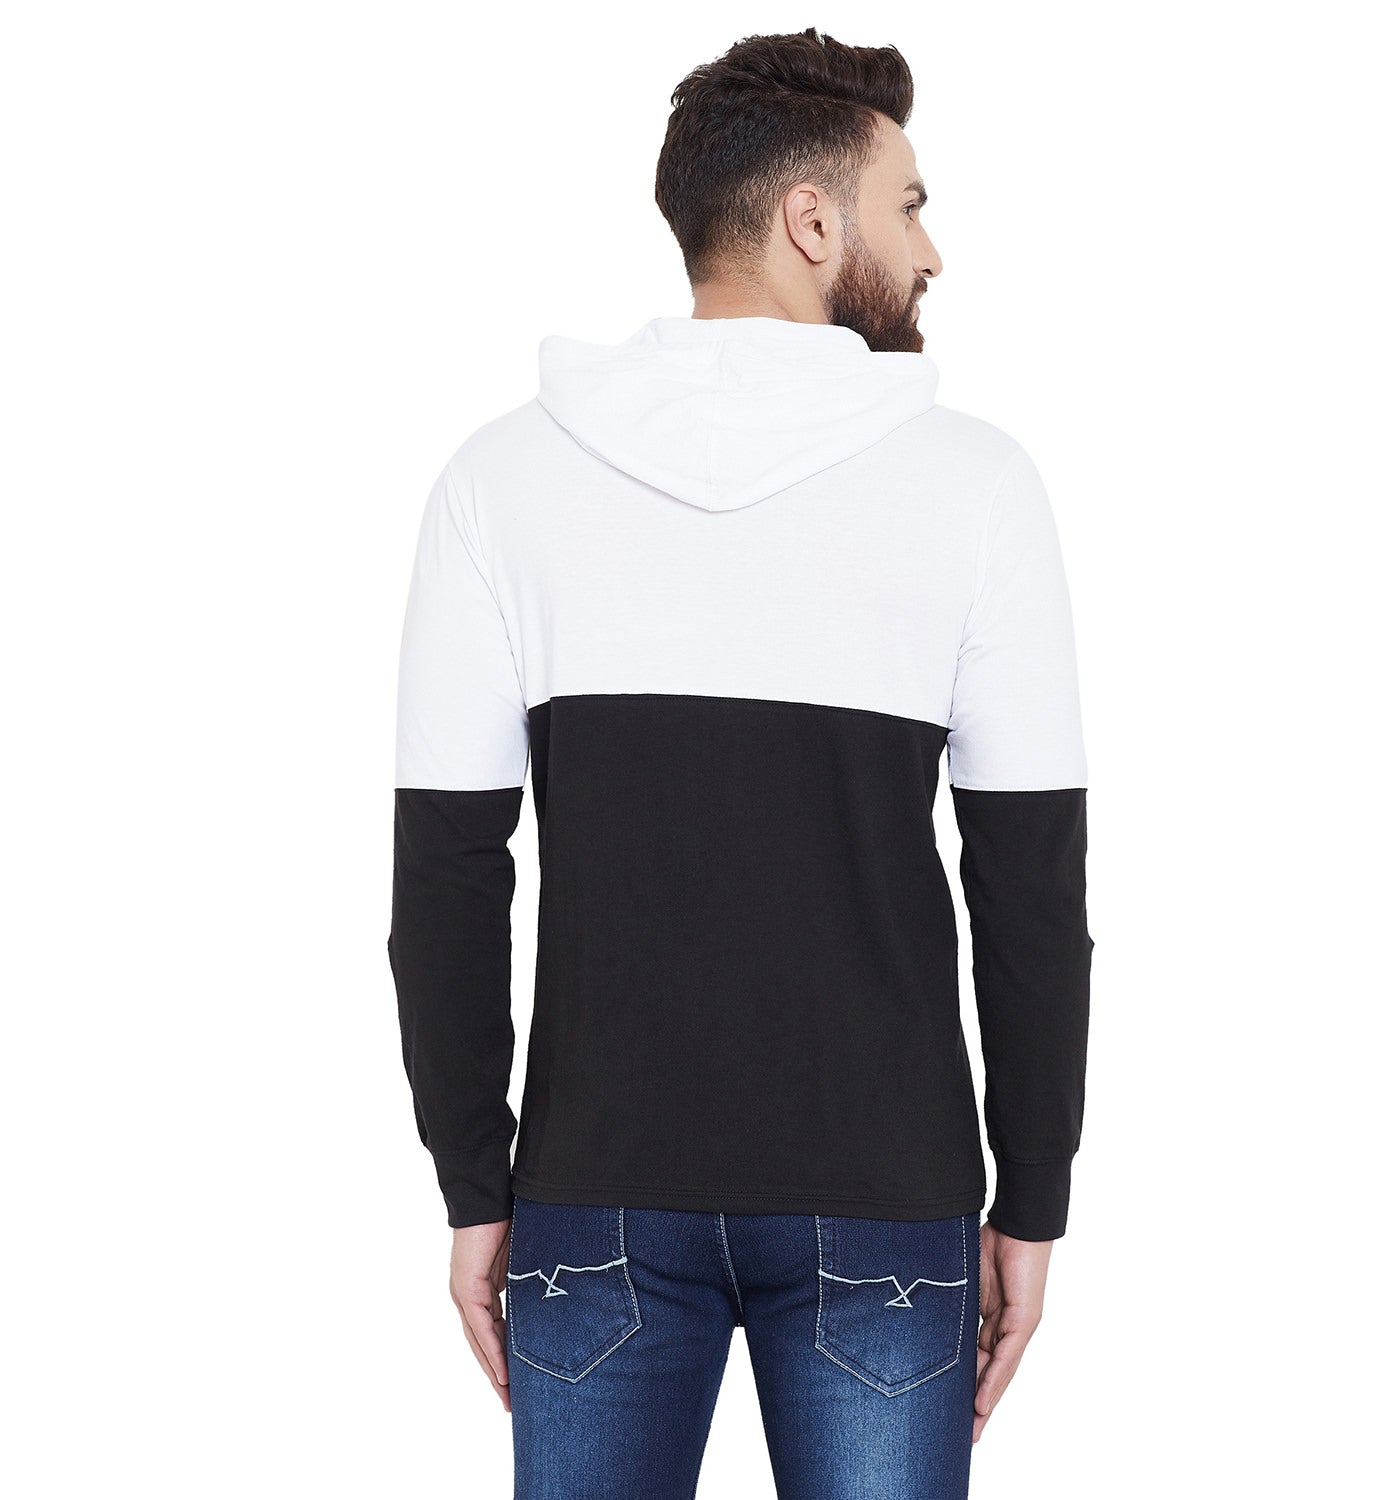 White/Black Printed Hooded Full Sleeves T-Shirt